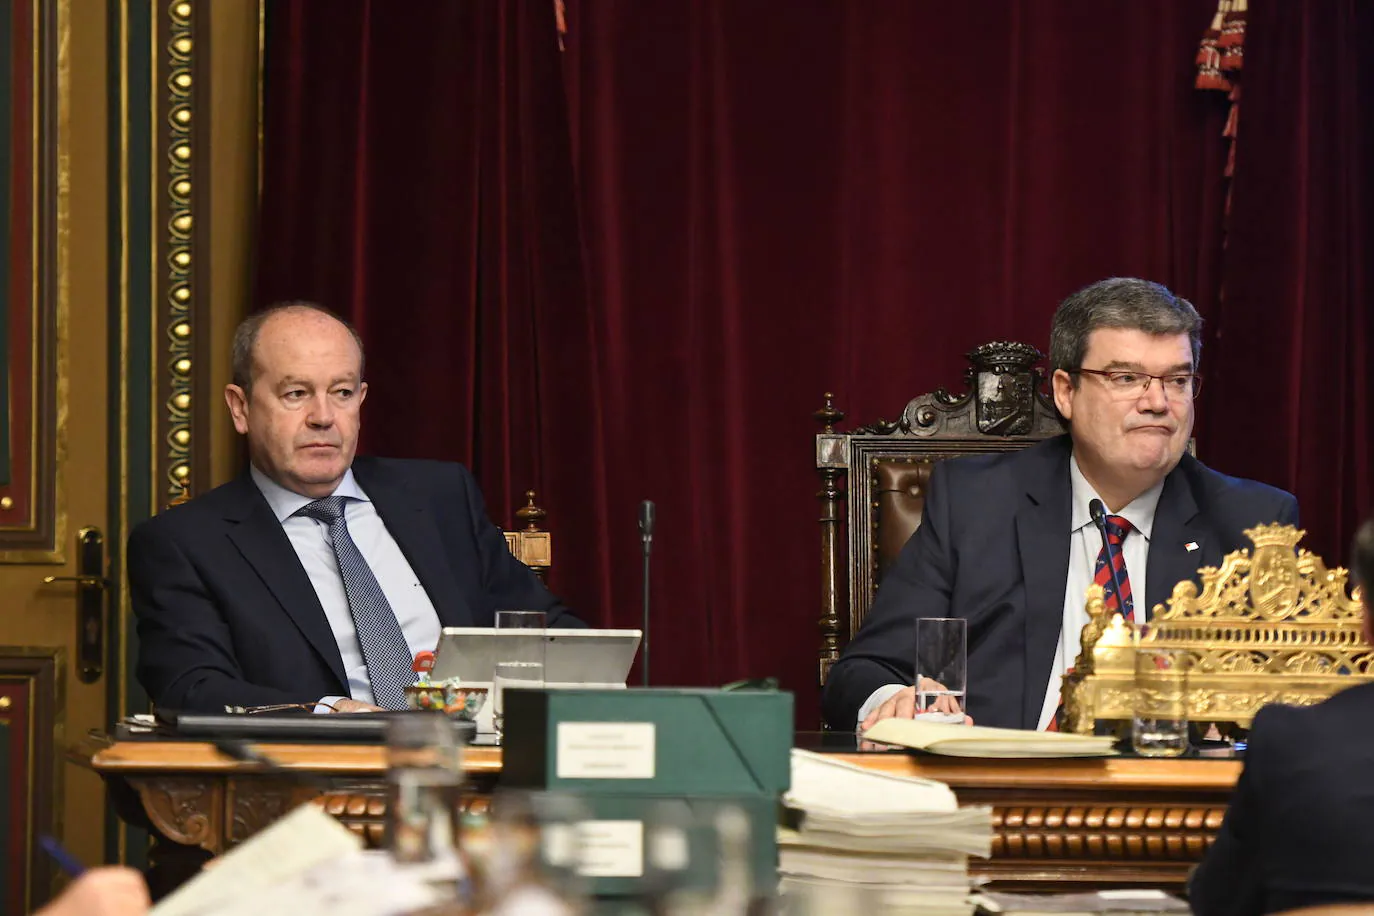 Aburto y Barkal, en el salón de plenos del Ayuntamiento de Bilbao en 2018.